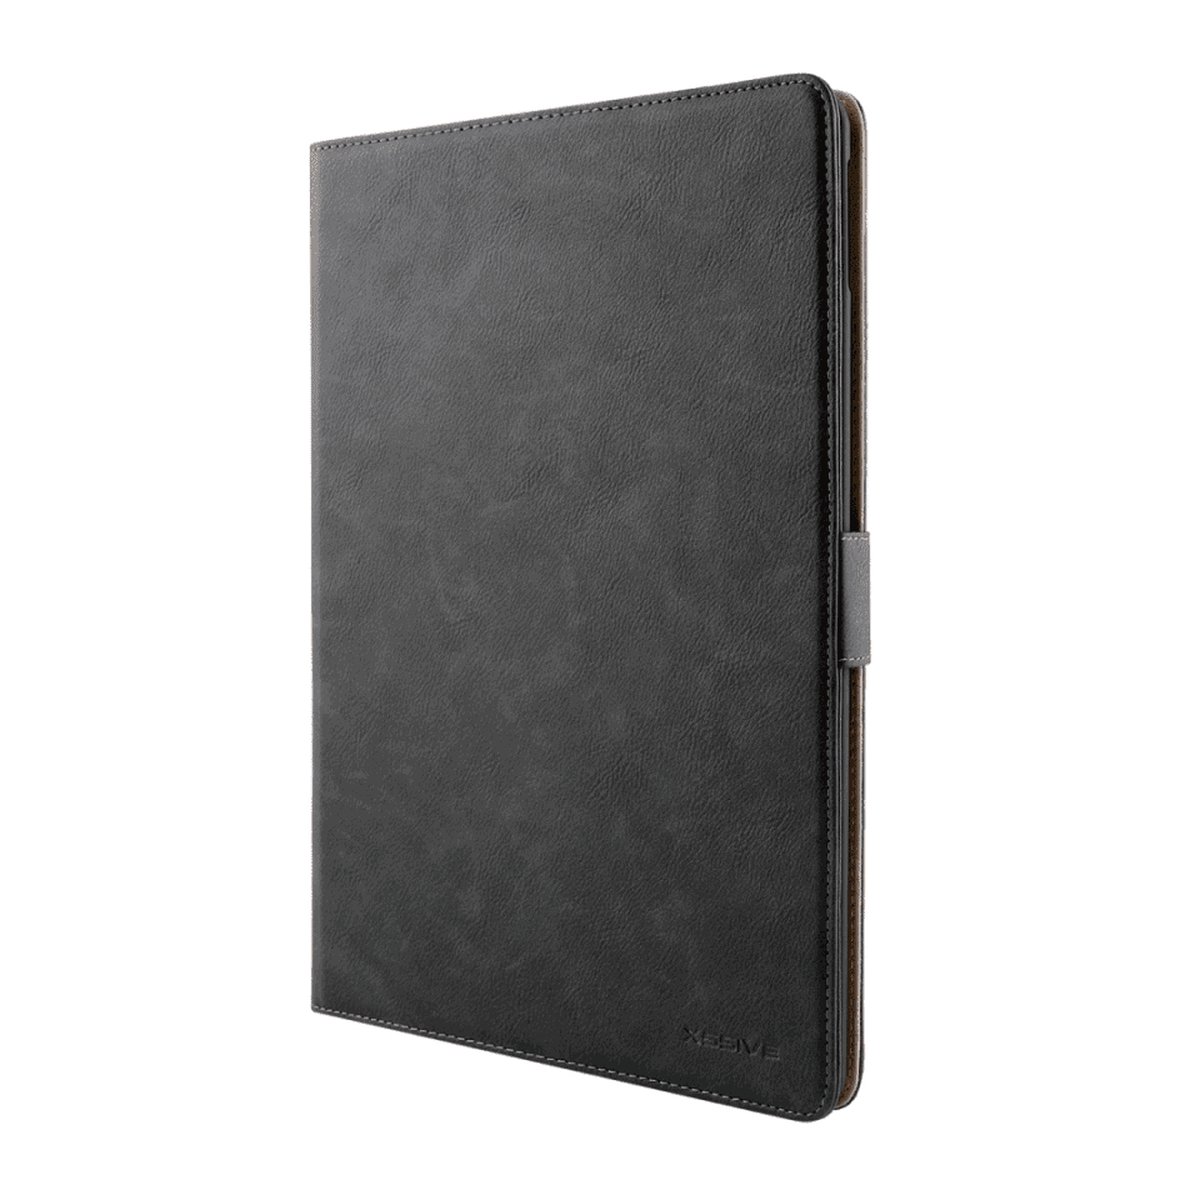 Premium Leren Boekmodel Hoes Geschikt Voor iPad Pro 11 inch 2020 / 2021 - Zwart